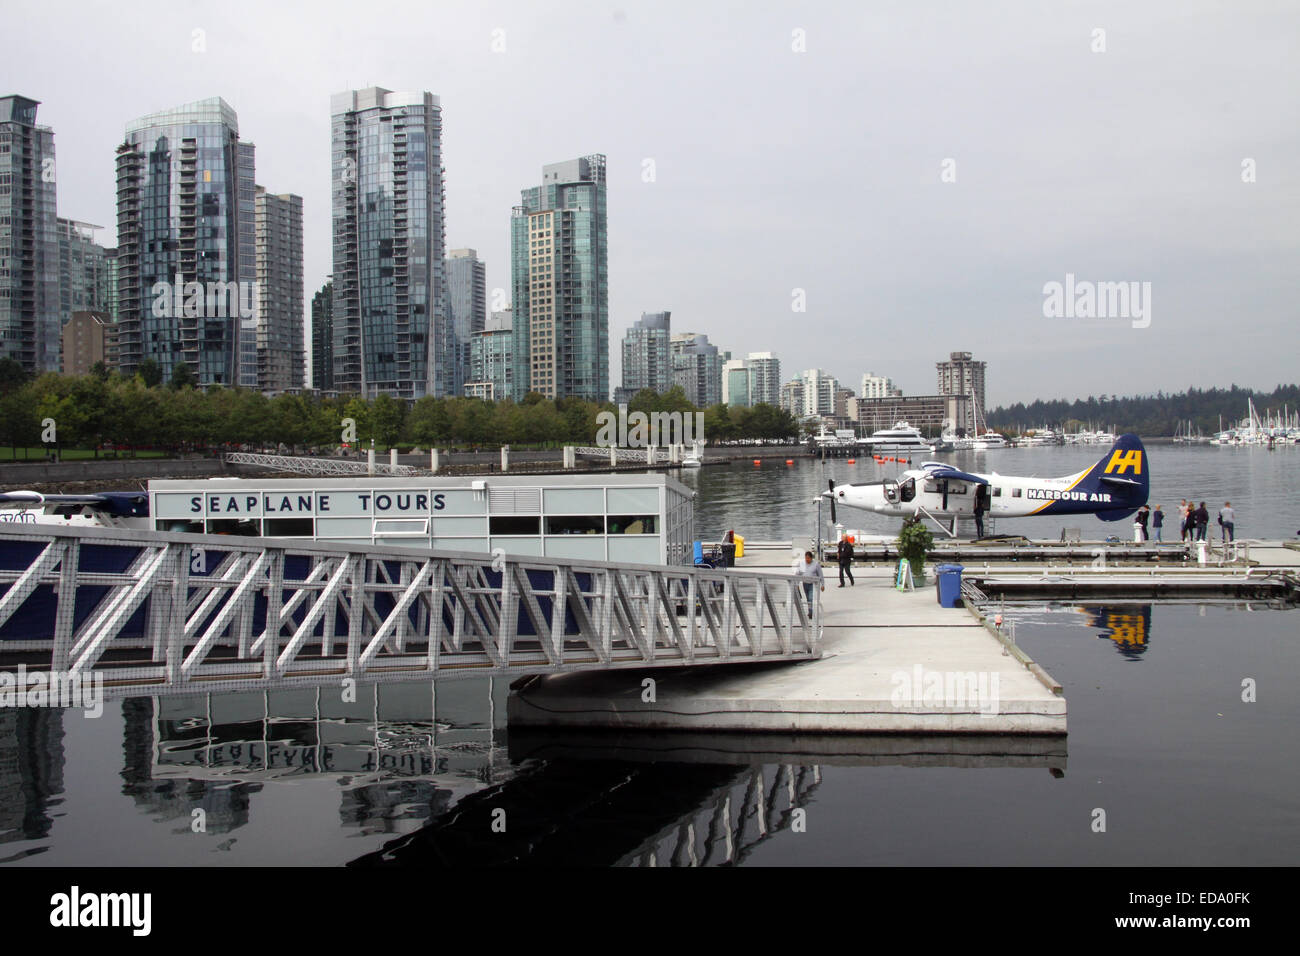 Tours d'hydravion la borne dans le port de Vancouver, CXH, Colombie-Britannique, Canada avec un Harborair seaplane Banque D'Images